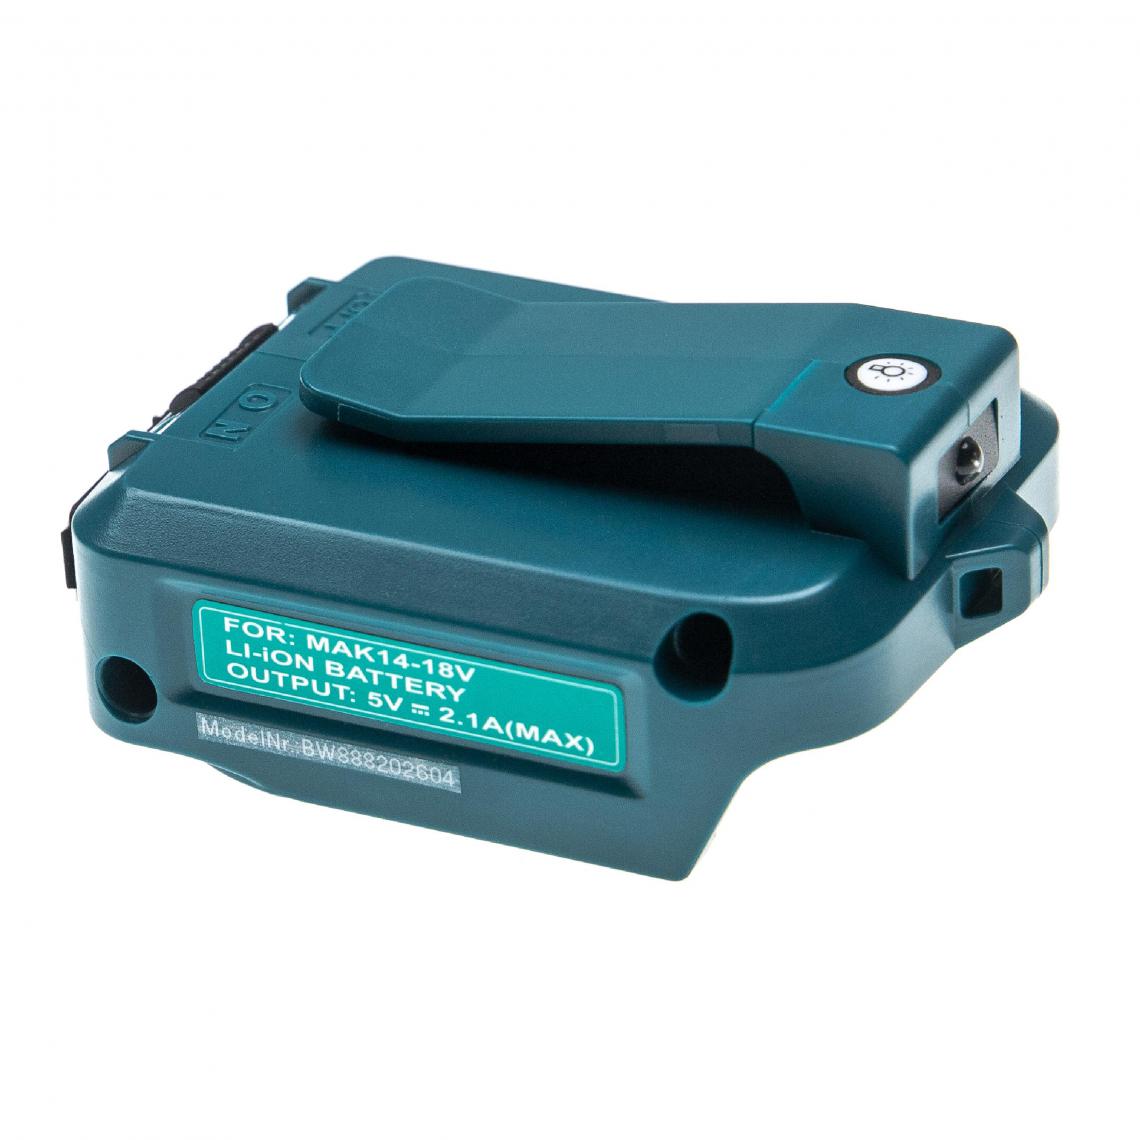 Vhbw - vhbw Adaptateur de batterie compatible avec Makita BL1830, Bl1845 outils électriques - Adaptateur batteries Li-ion 14,4 V - 18 V / 2 A - Accessoires vissage, perçage